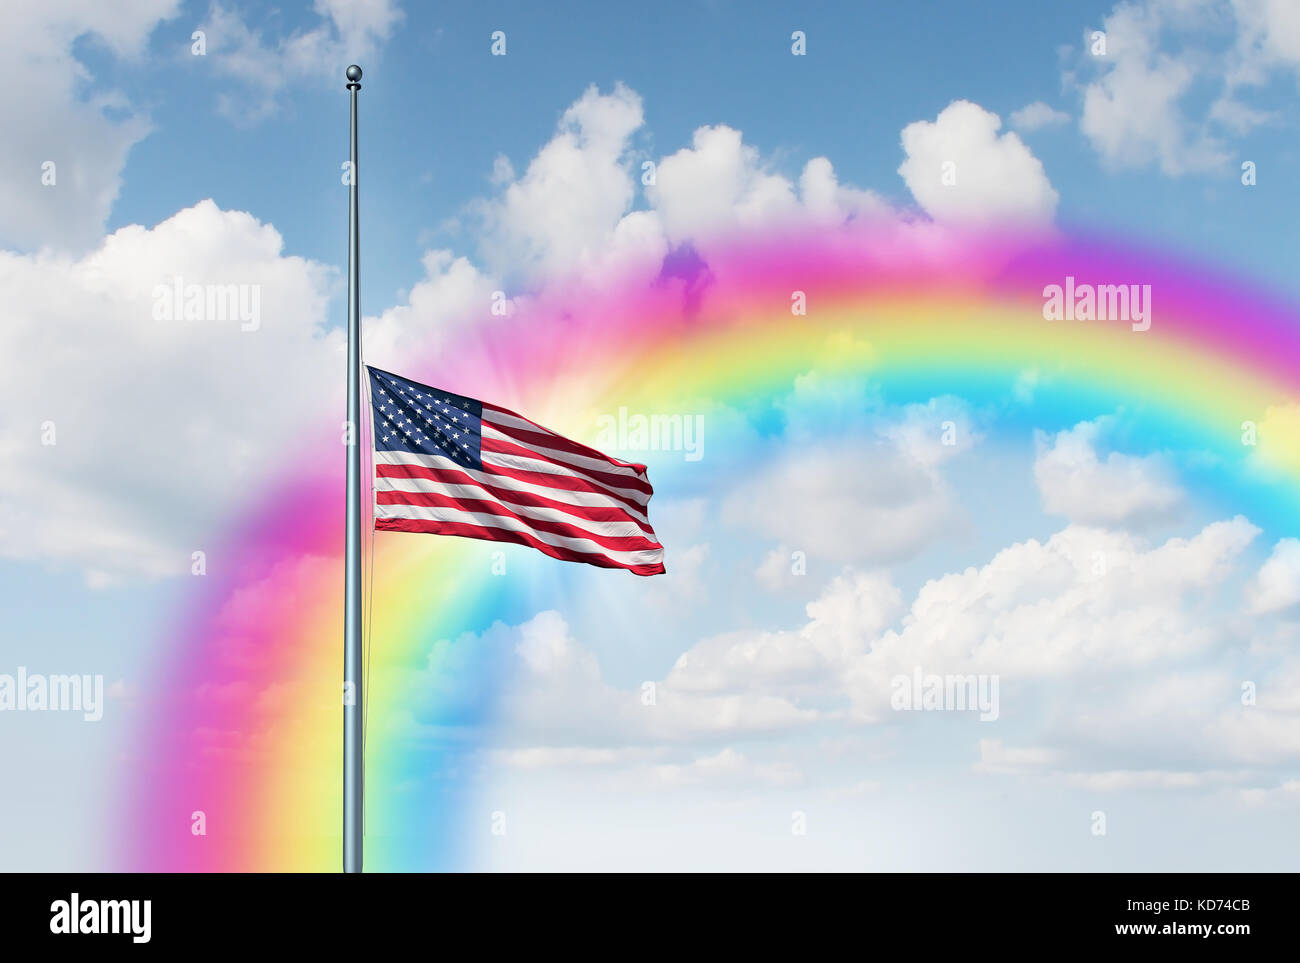 Halbmast amerikanische Flagge Hoffnung Regenbogen Konzept als Symbol der Vereinigten Staaten auf niedrigem Niveau fliegen auf dem Fahnenmast mit einer Sun Glow. Stockfoto